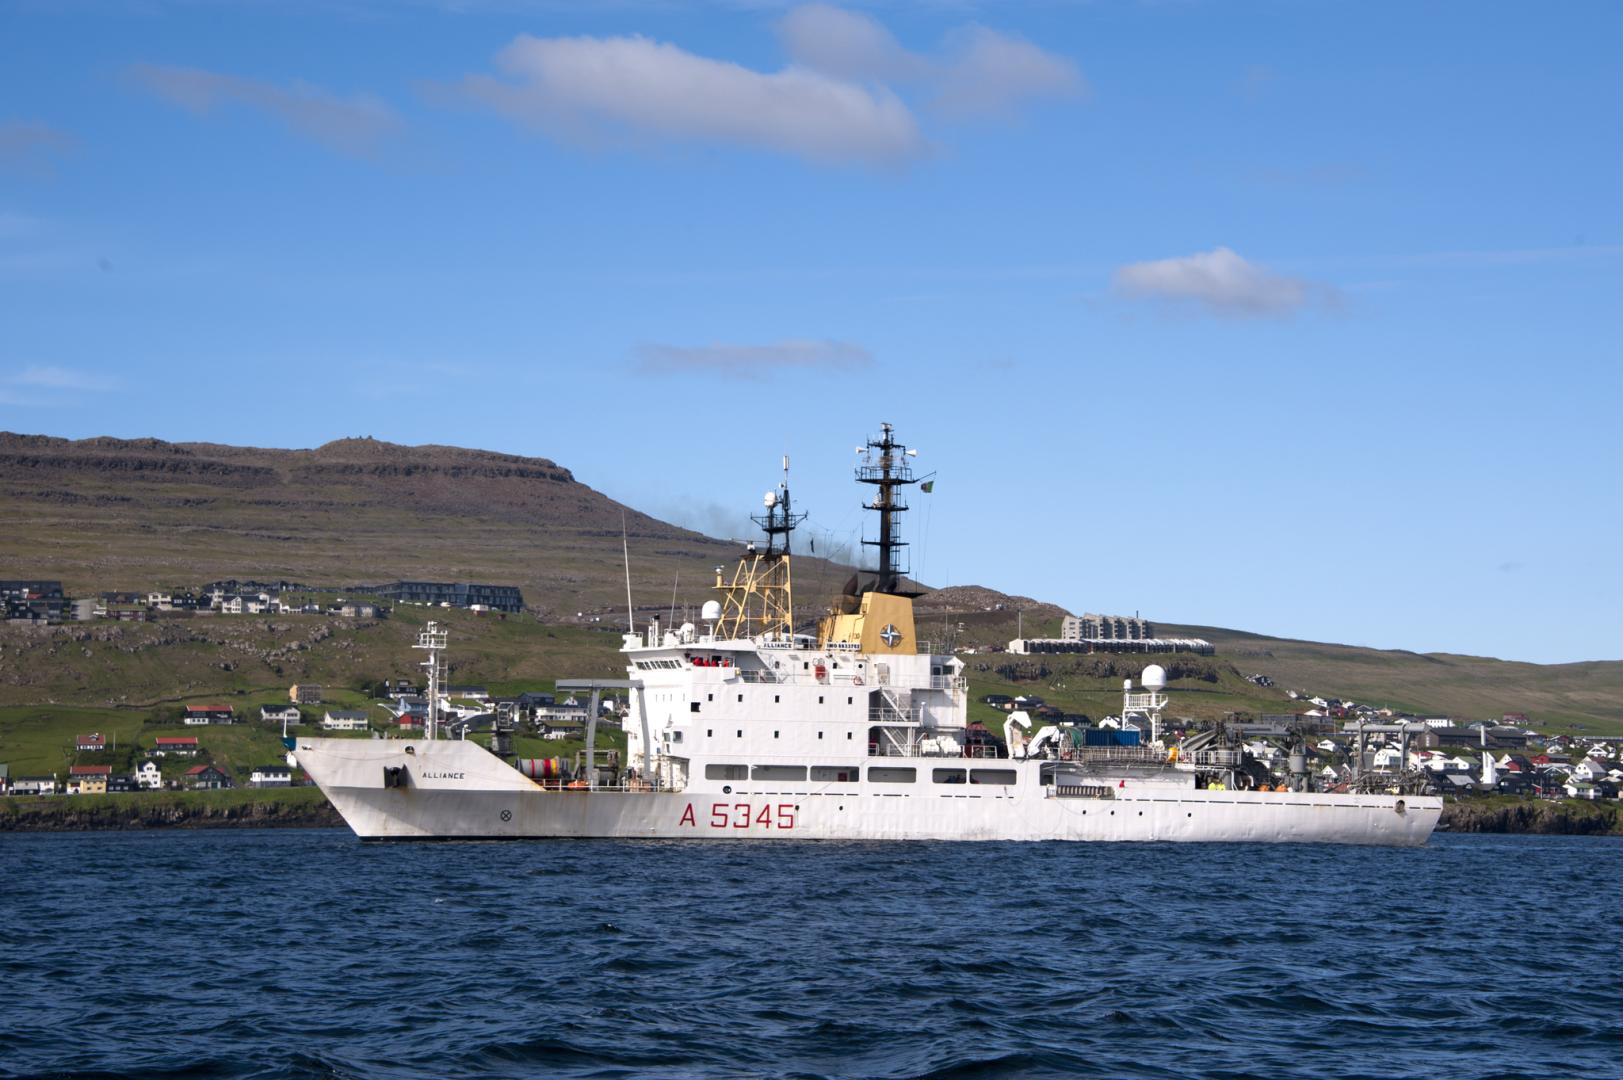 Marina Militare: la Marina Militare torna al circolo polare artico